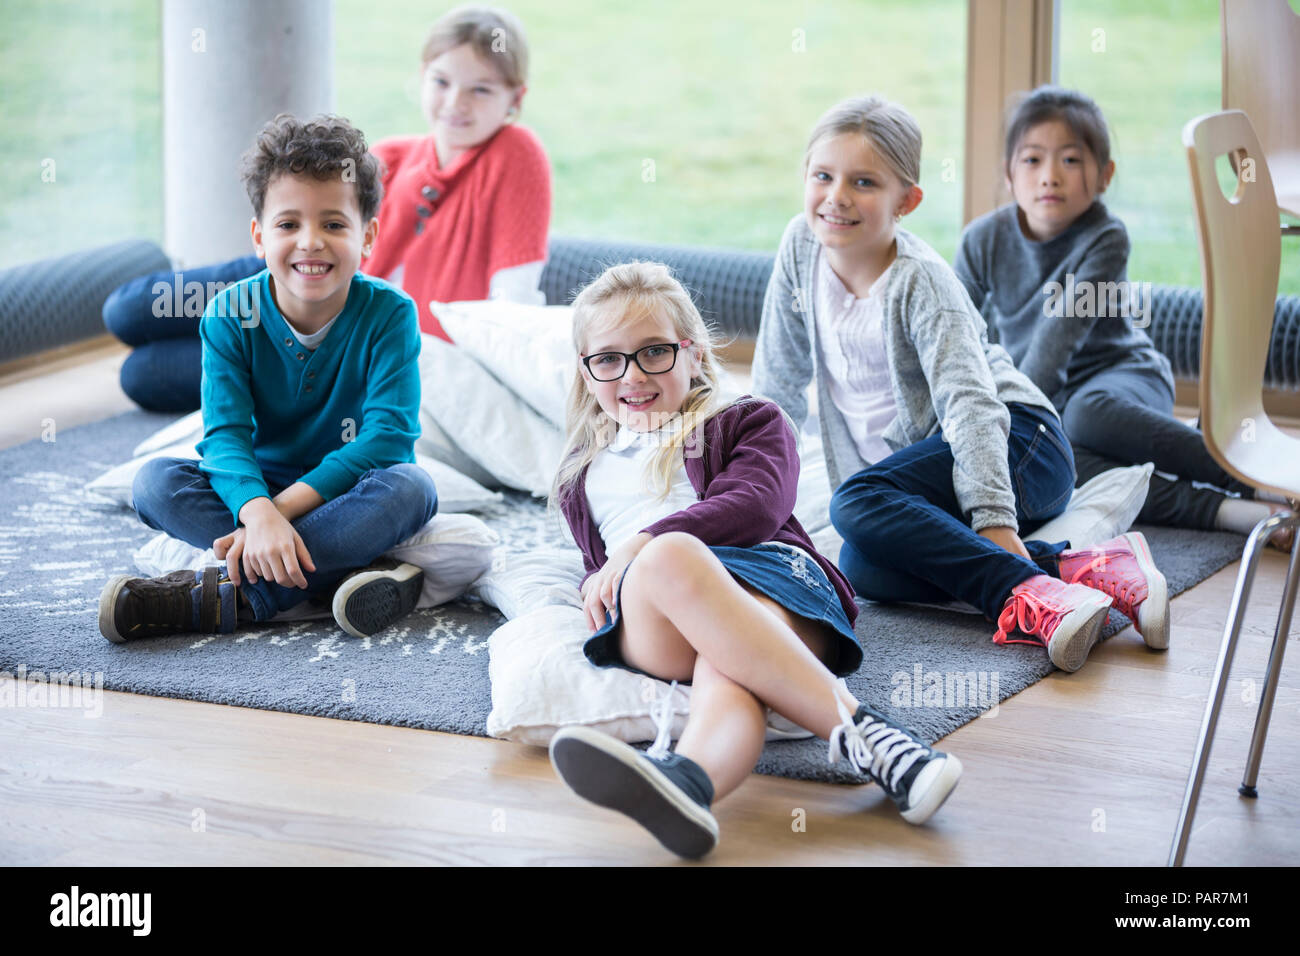 Portrait von lächelnden Schüler sitzen auf dem Boden in der Schule pause Zimmer Stockfoto